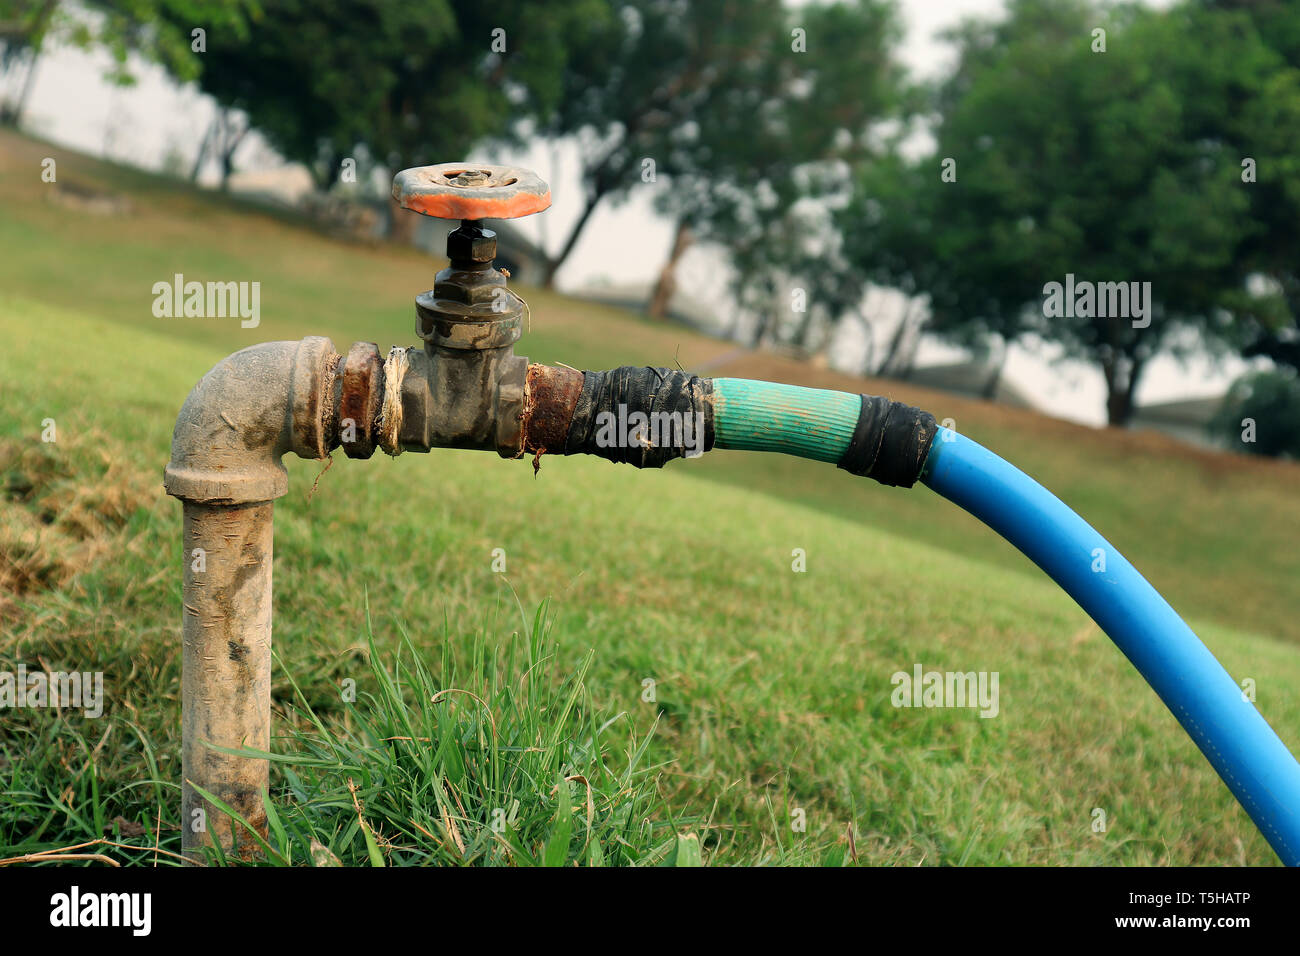 Wasserhahn Wasser vom Wasserhahn Wasserventil, Schieber in den grünen Garten  hochauflösende Bilder Galerie Stockfotografie - Alamy